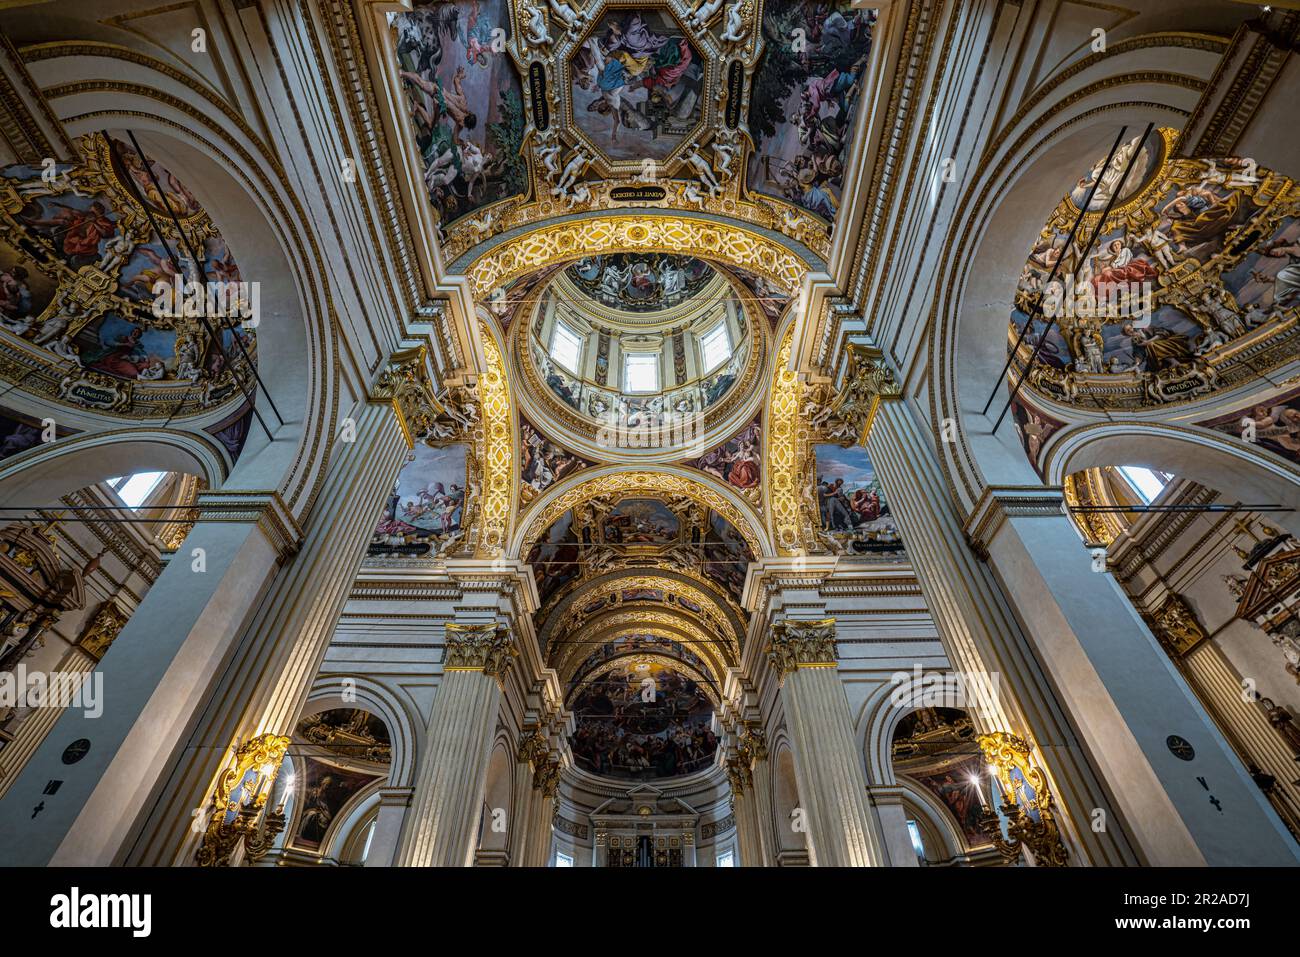 Los techos y la cúpula ricamente adornados con estucos, mármoles y frescos de la Basílica dedicada a la Virgen de la Ghiara. A cargo de Reggio Emilia Foto de stock